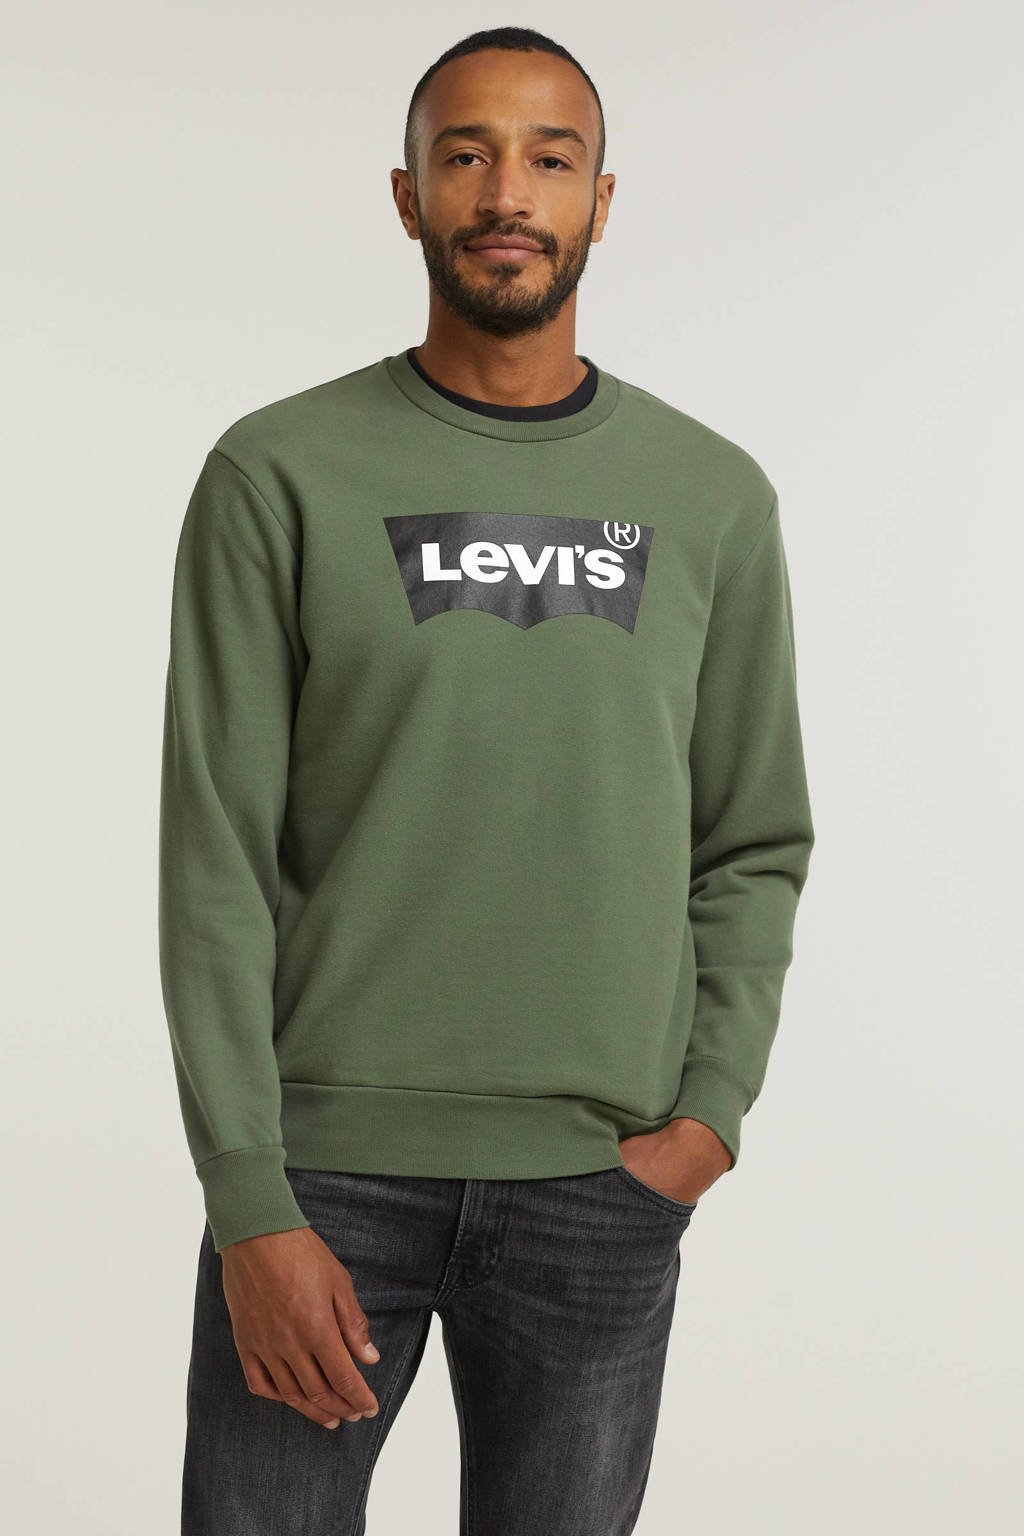 Vechter metro Humaan Levi's sweater met logo groen | wehkamp